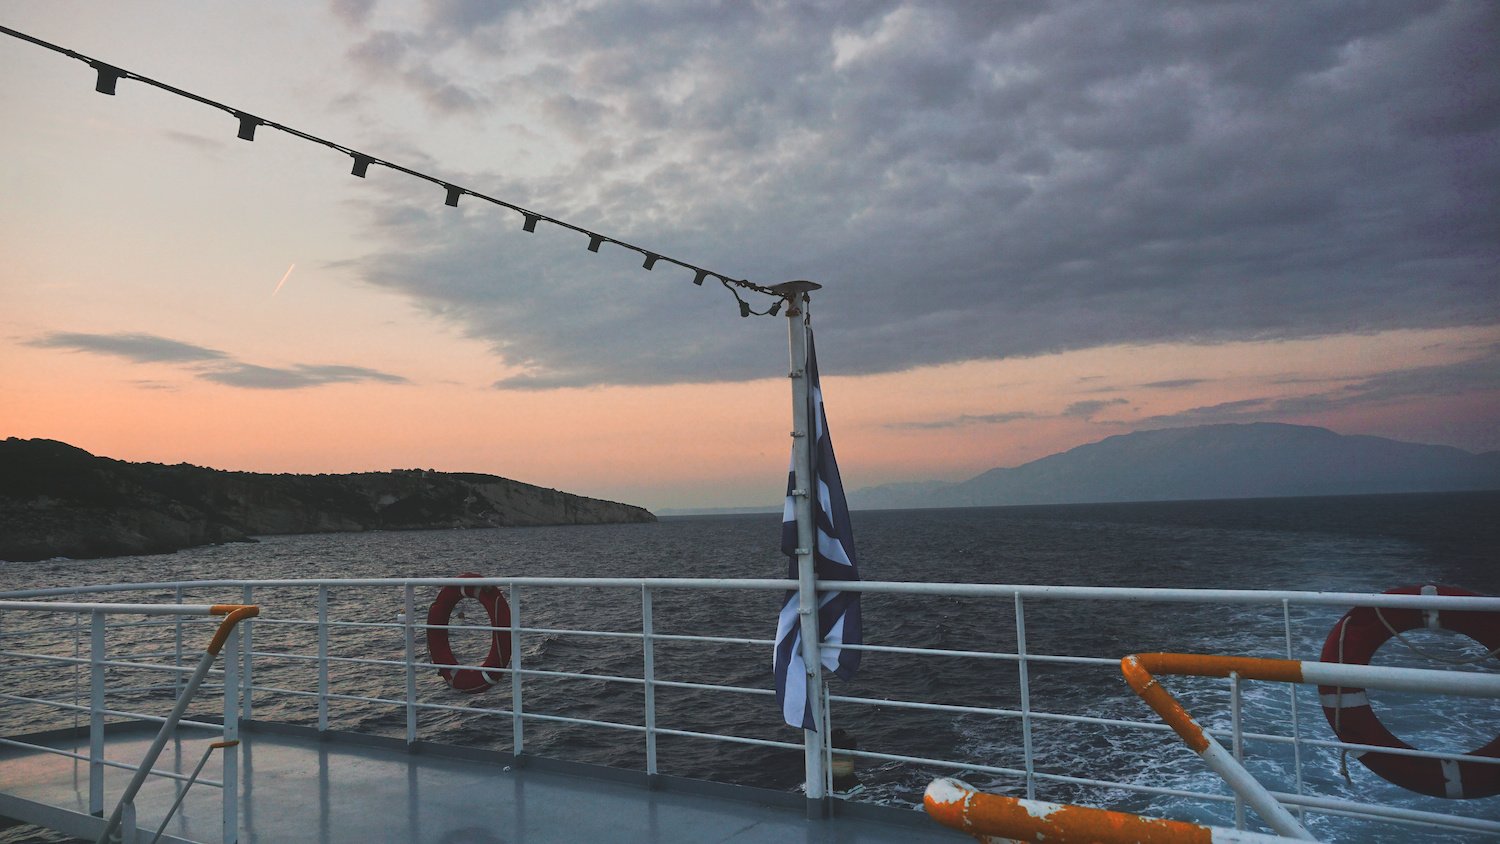 Ionian Pelagos Ferry to Zante